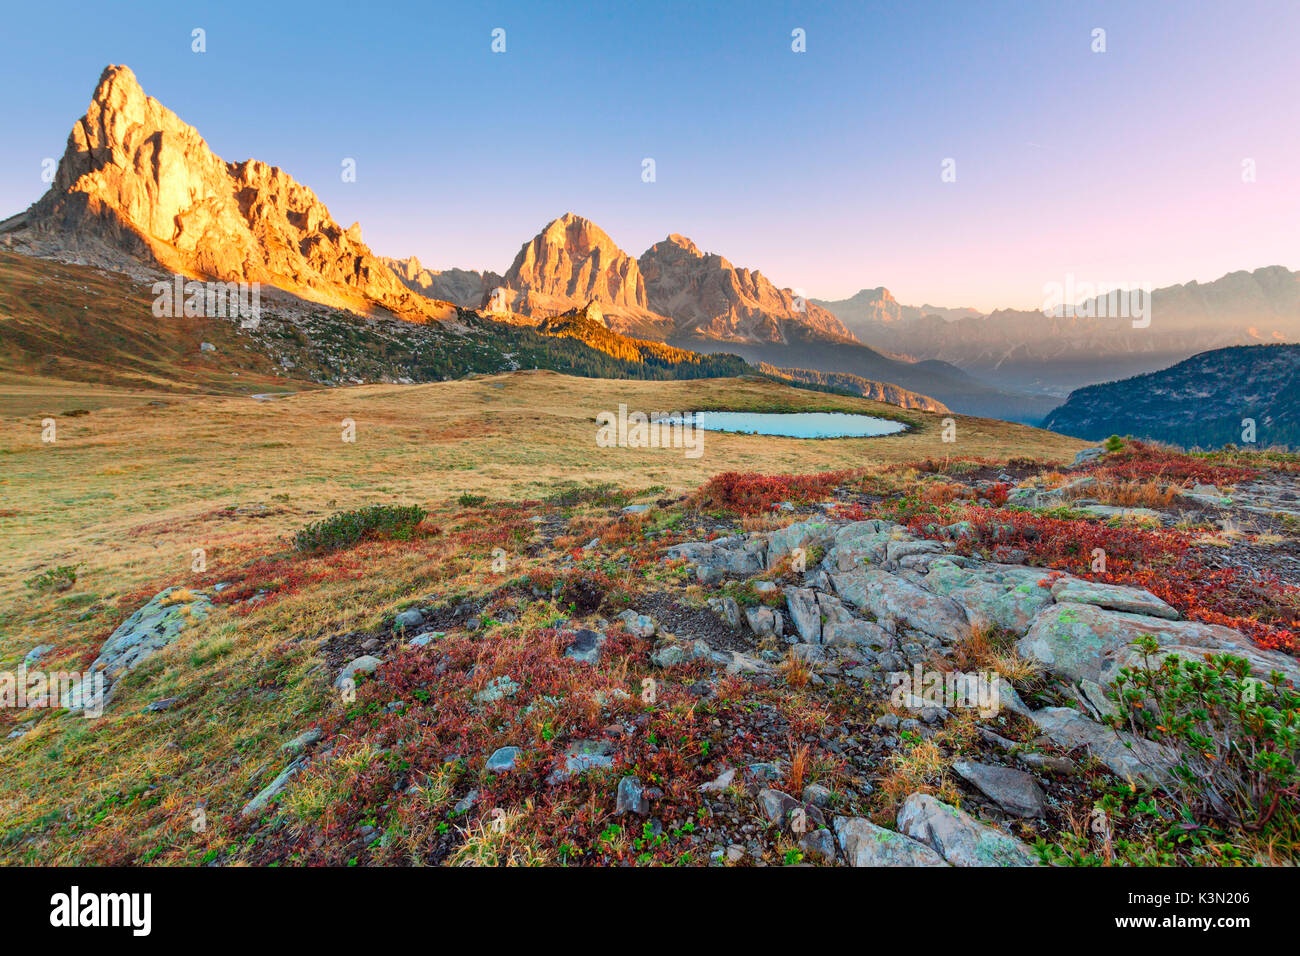 Herbst Sonnenaufgang in der Nähe von Passo Giau zu den Ampezzaner Tal. Die blaubeere Pflanzen sind rot und Gras wird durch die ersten Fröste verbrannt. Die Sonne beleuchtet die Gusela und Tofane. Dolomiten, Italien Stockfoto